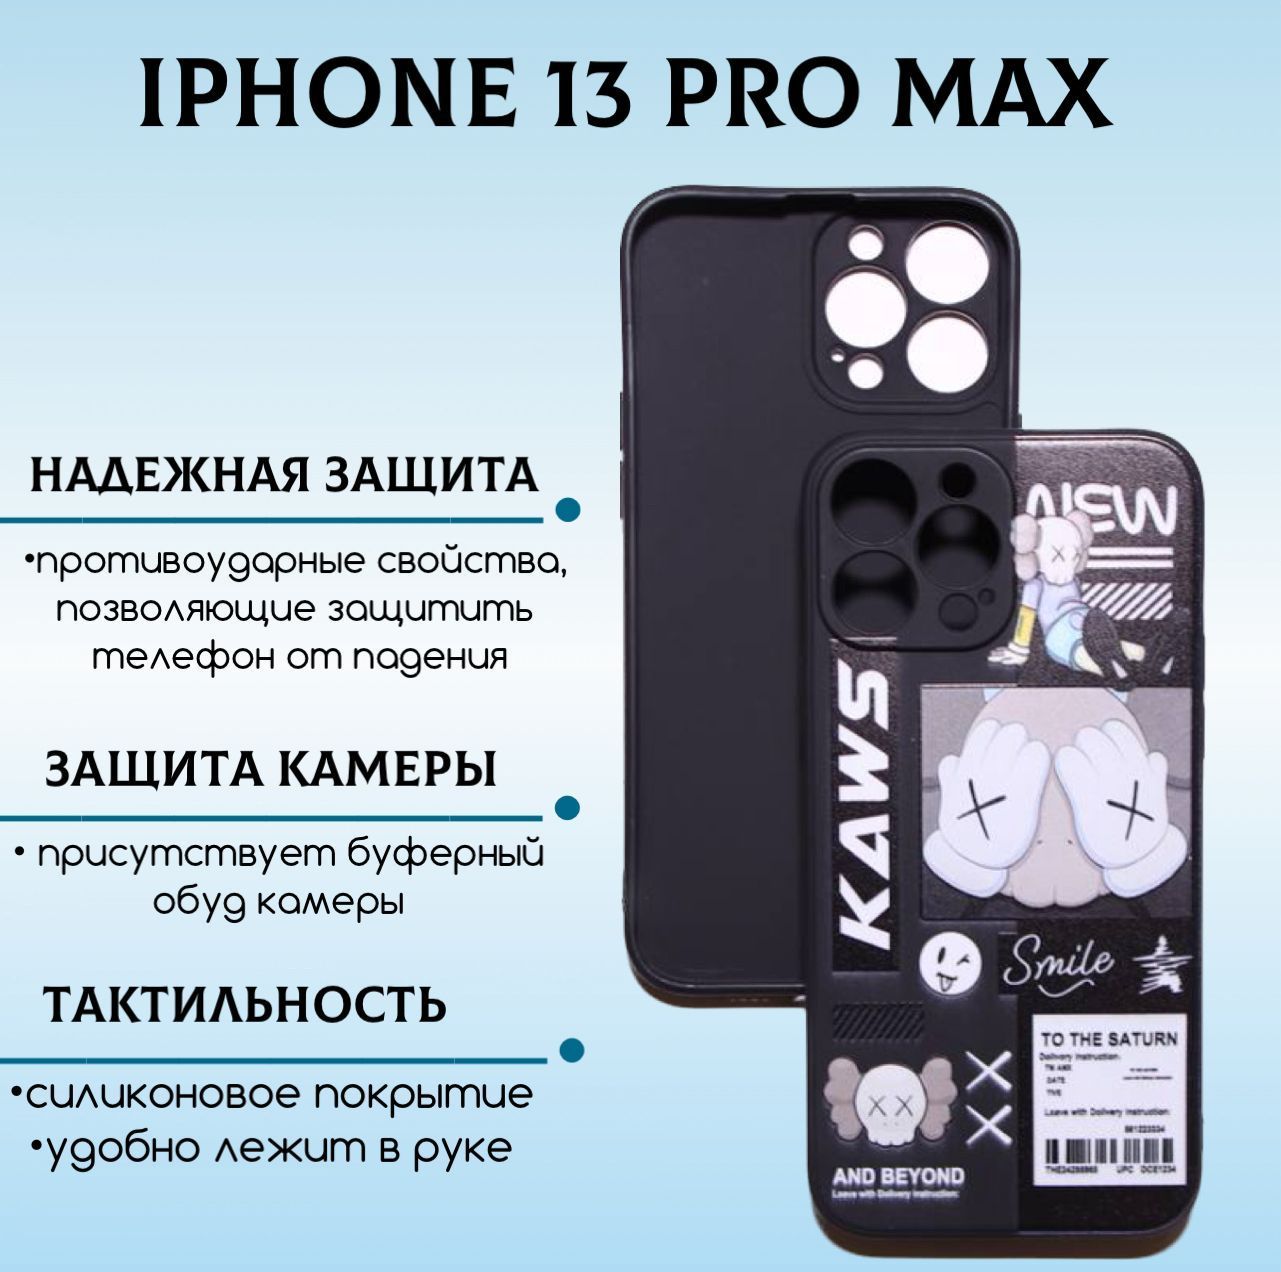 15 pro max купить в спб. Кабель на айфон 13 про Макс. Iphone 15 Pro Max для наружная реклама. Ай бой на iphone 13 Pro Max. На iphone 13 Pro Max не работает интернет.